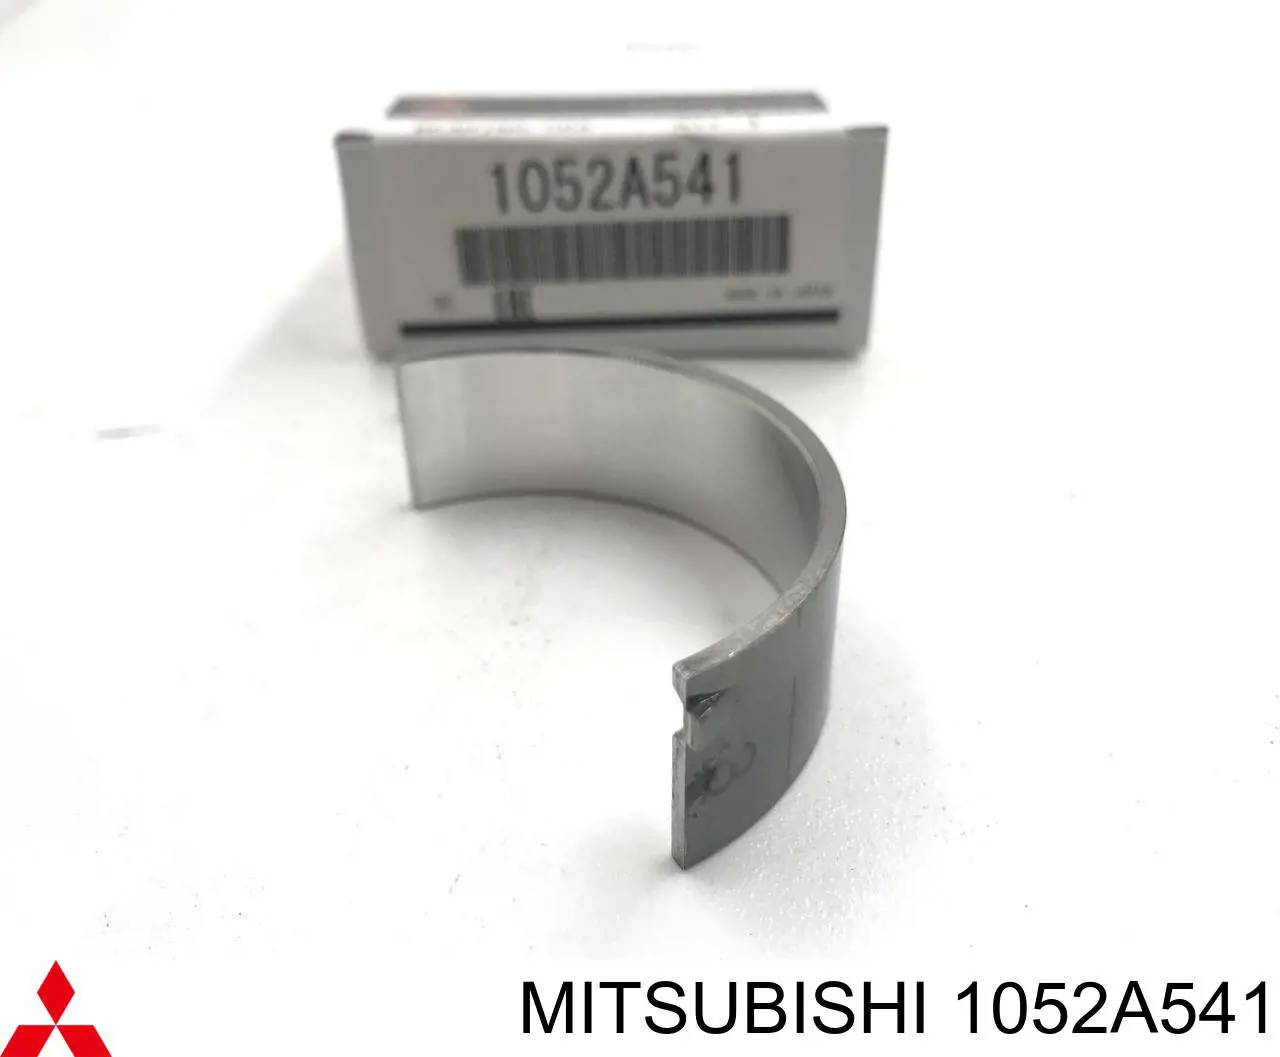 1052A541 Mitsubishi juego de cojinetes de cigüeñal, estándar, (std)